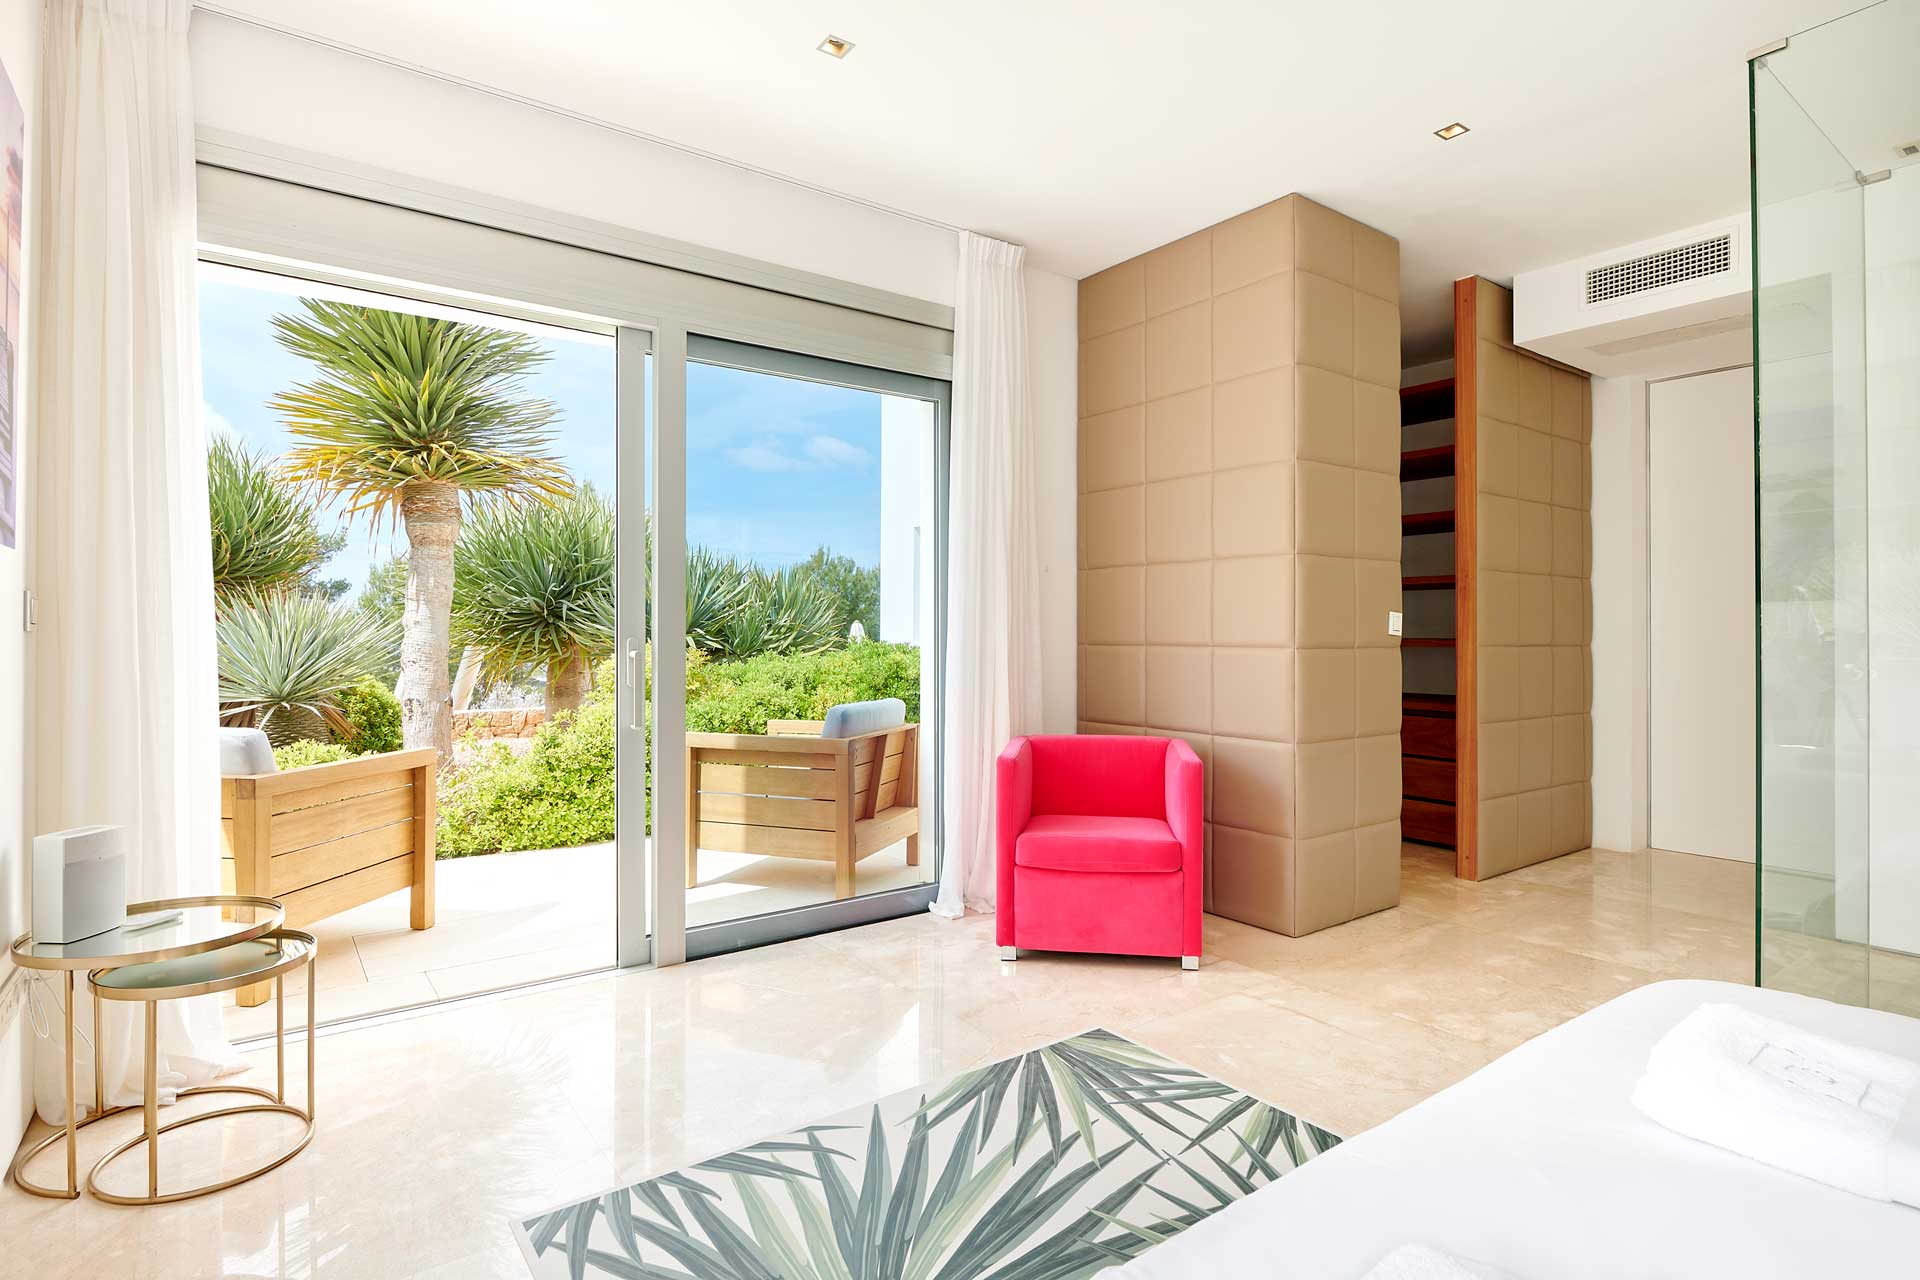 Villa CA Ibiza - Bedroom 4 with en-suite bathroom